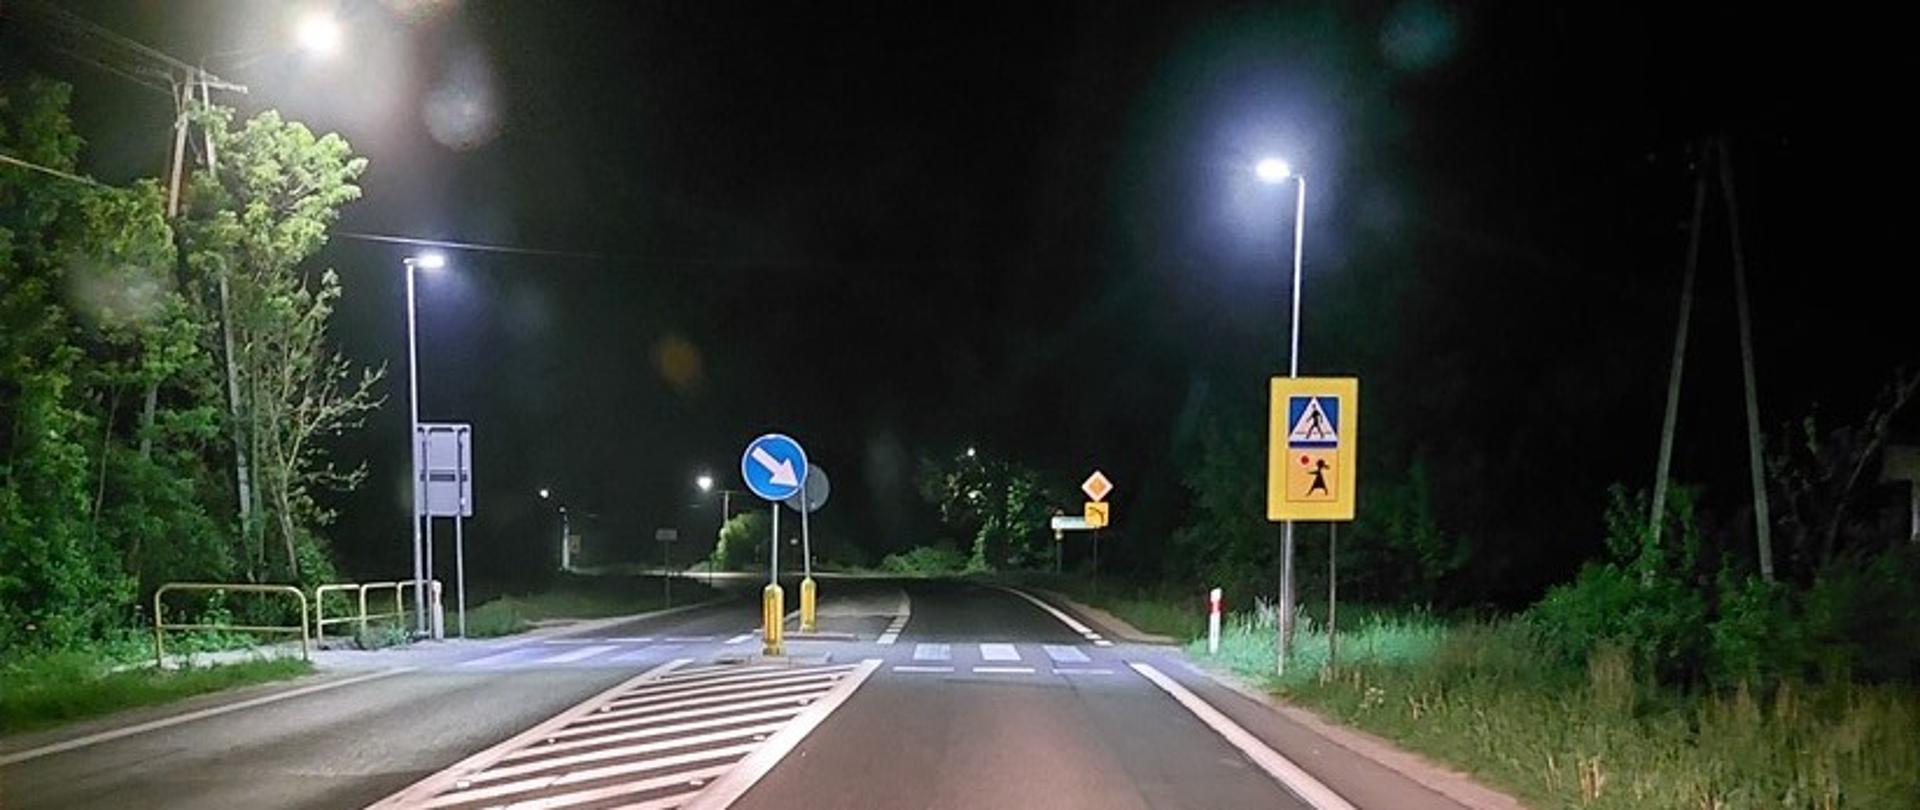 DK73 przejście dla pieszych z dodatkowym oświetleniem poprawiającym widoczność w porze nocnej. 